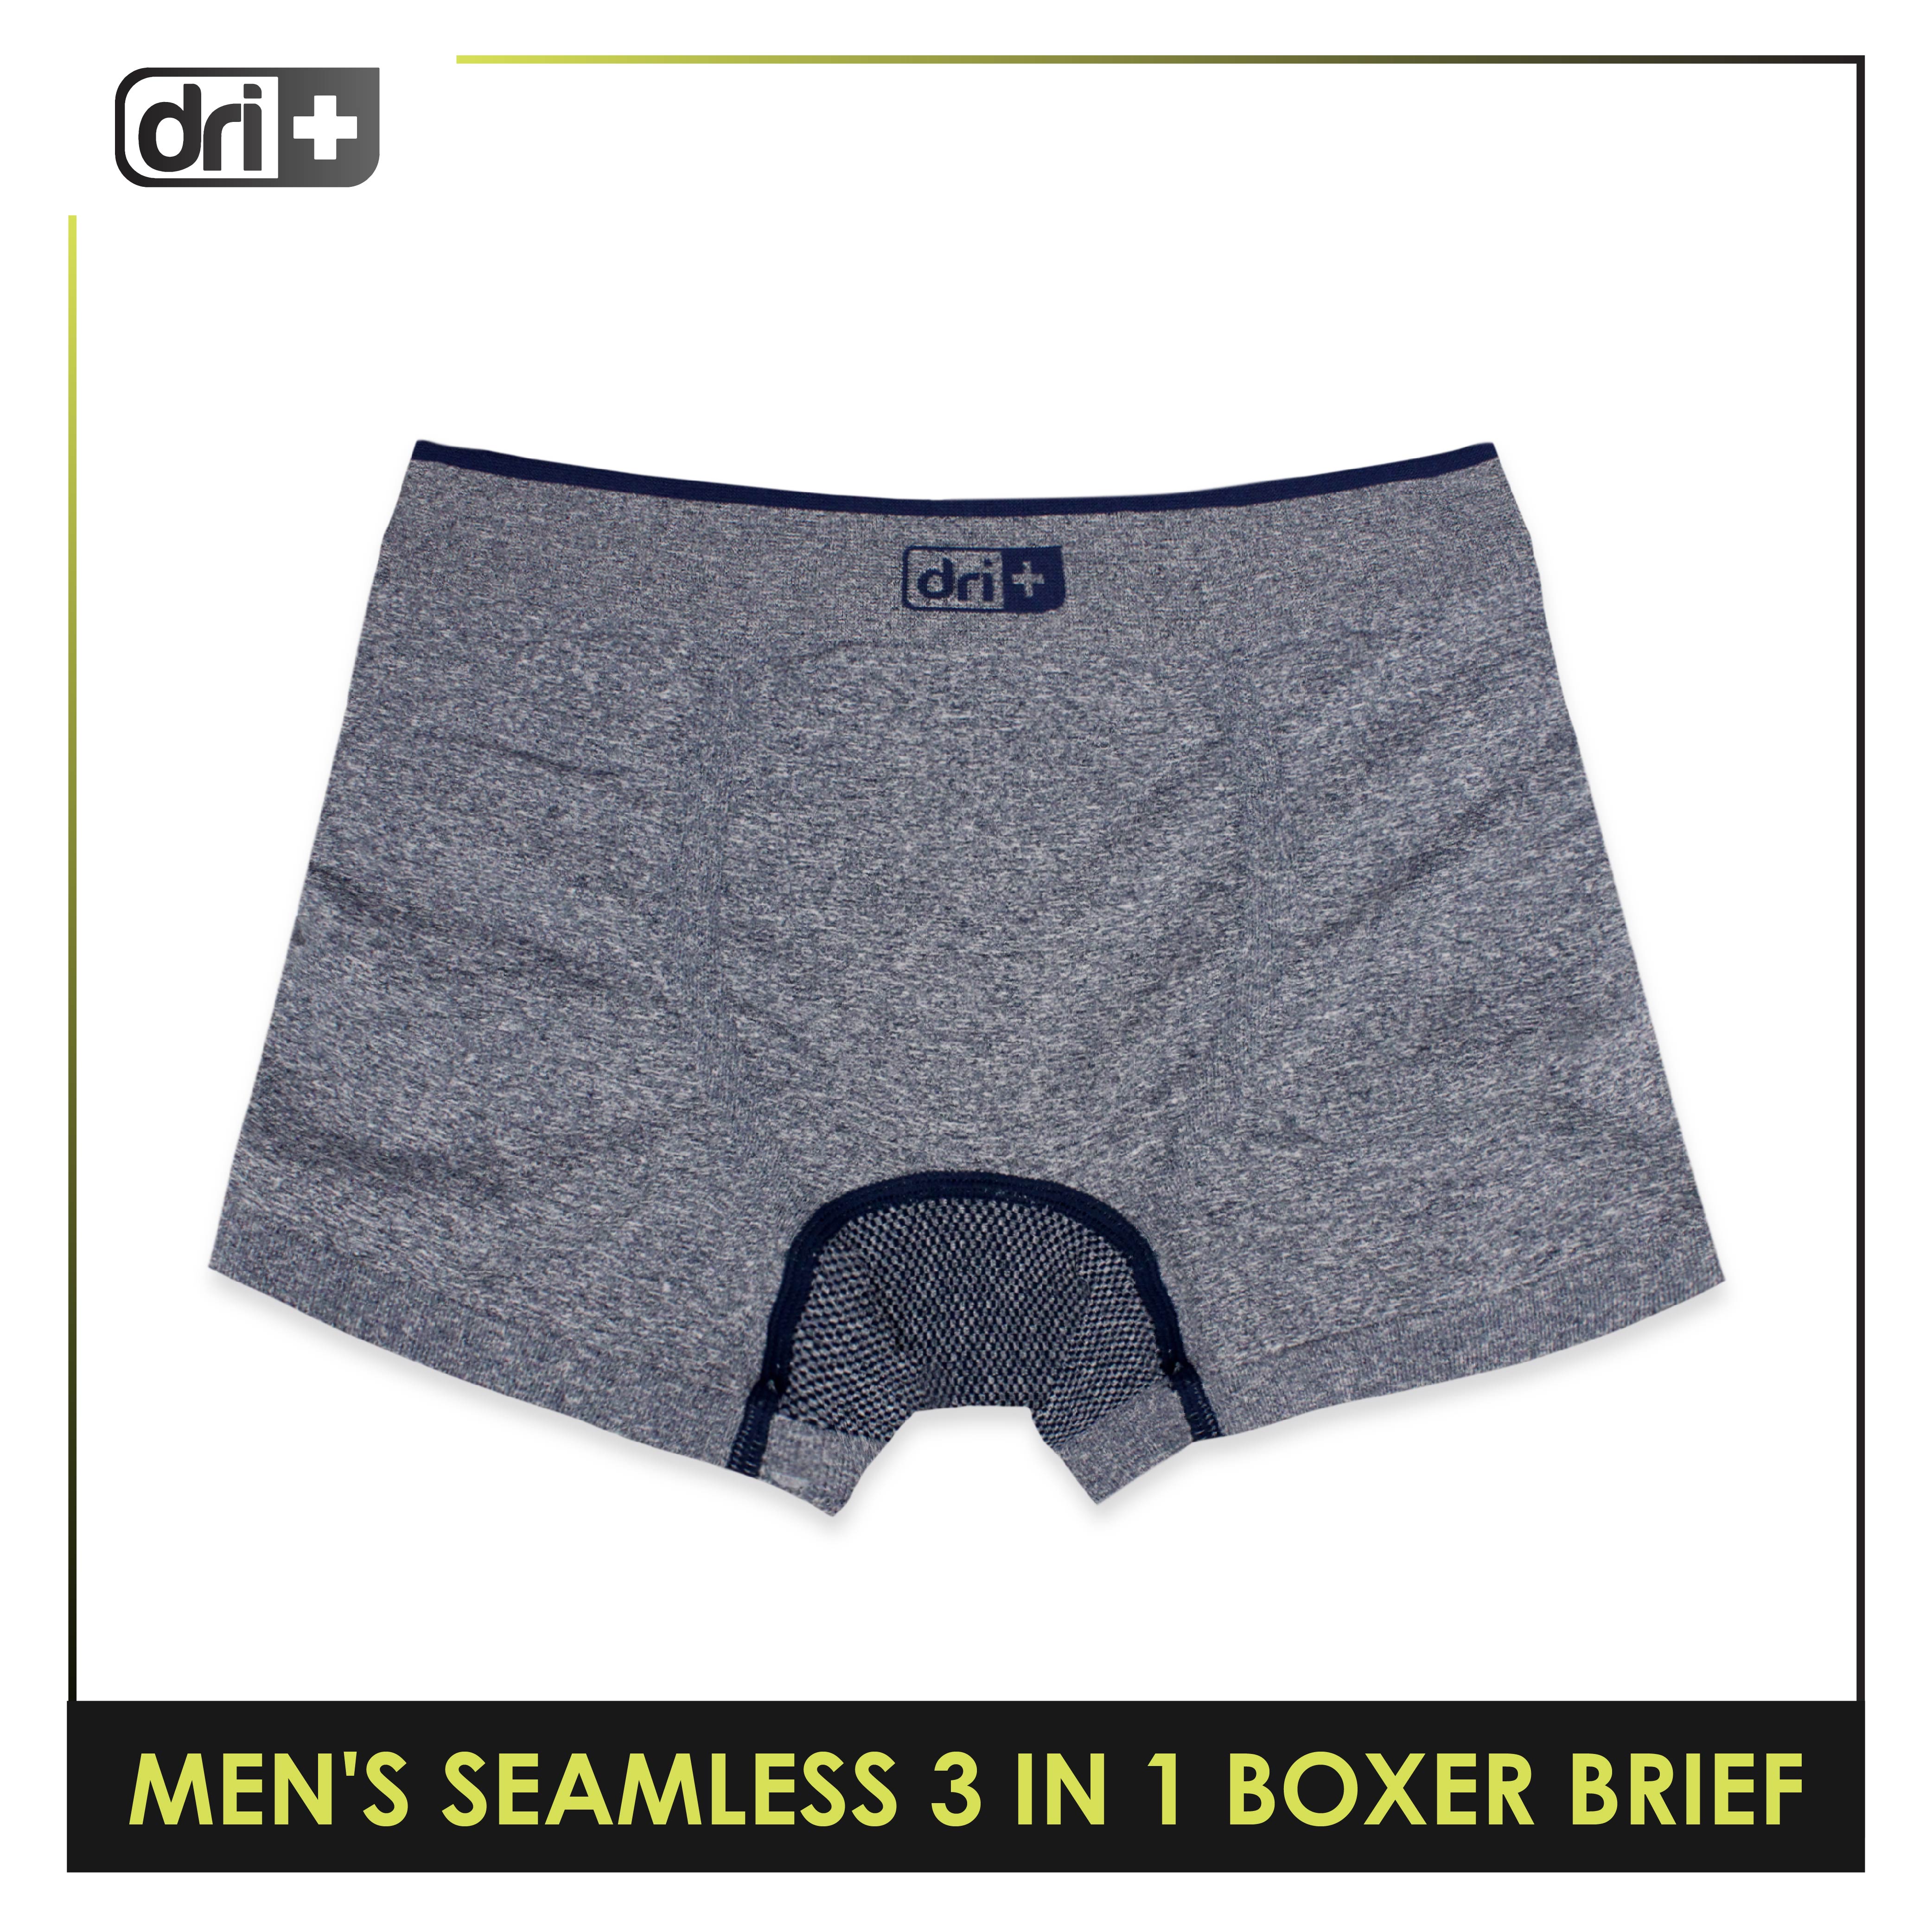 Men's Seamless Boxer Briefs